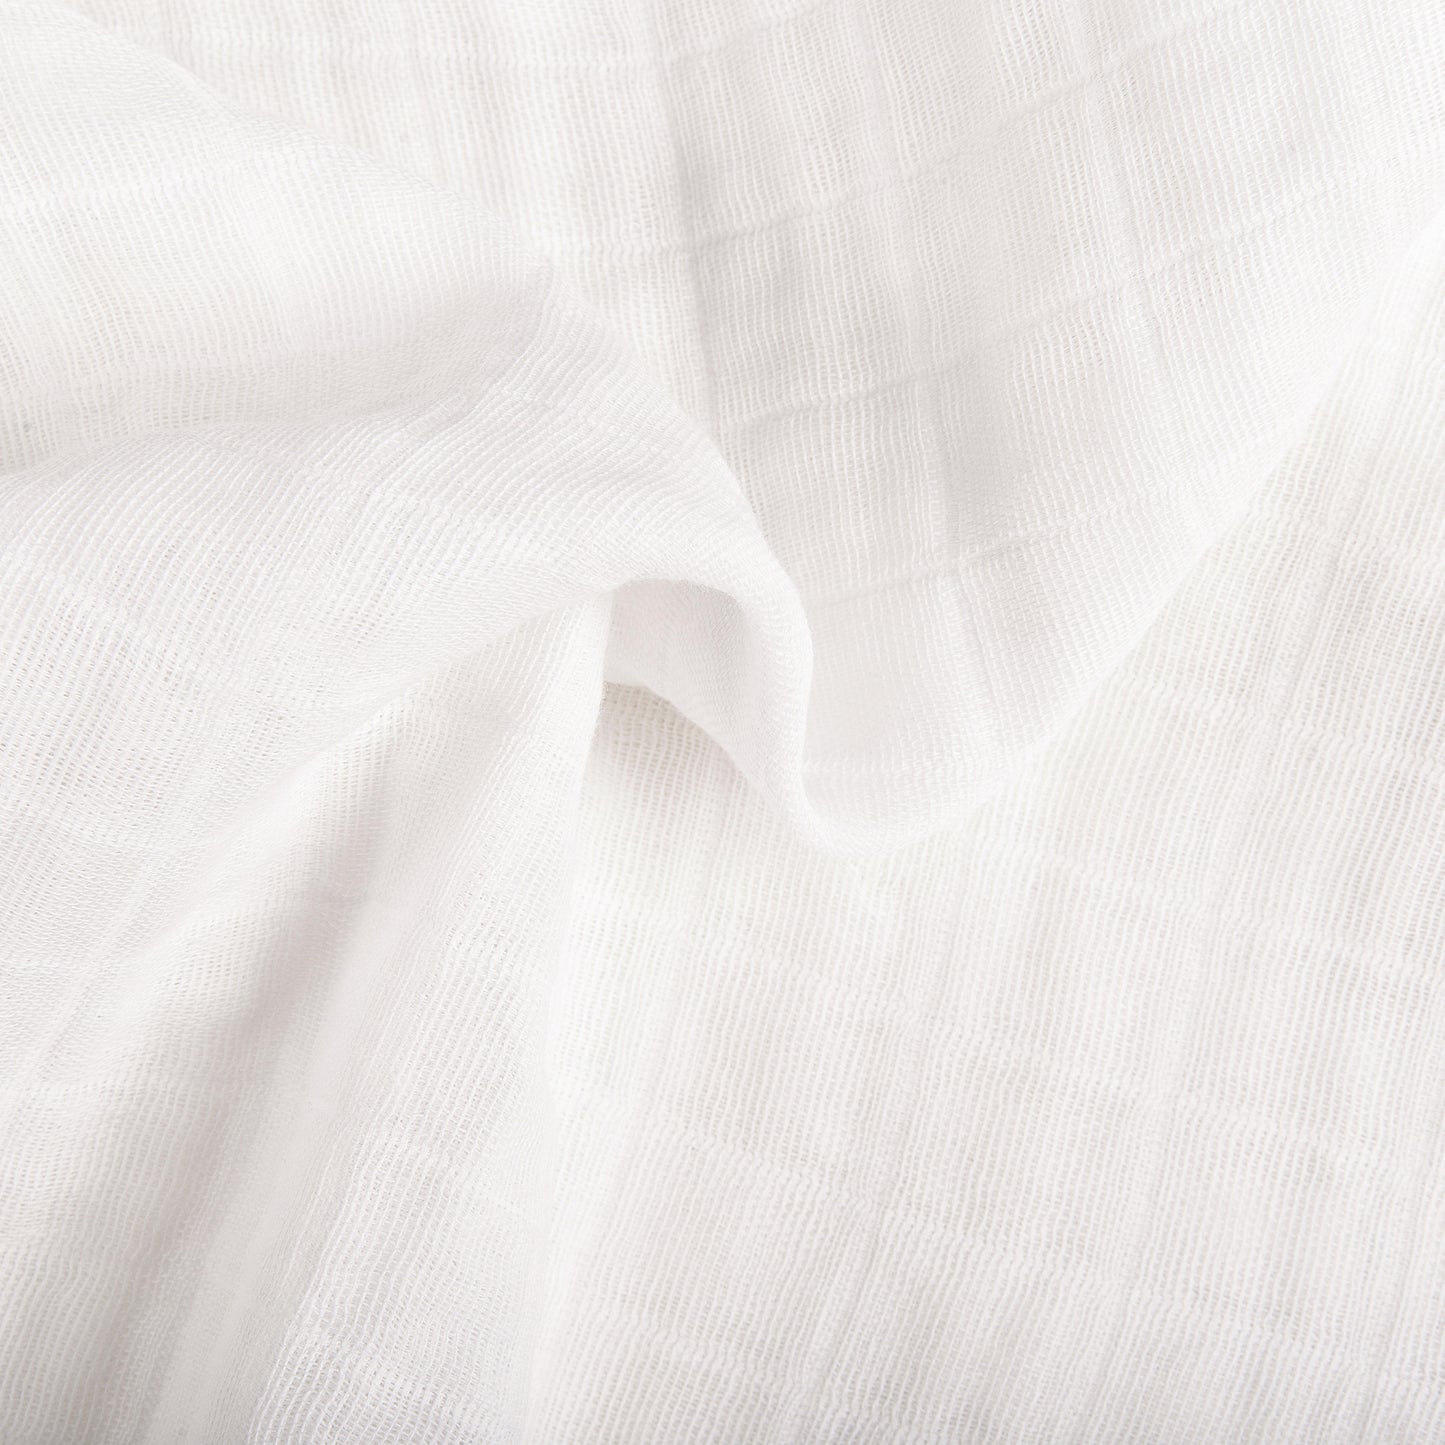 T29435,Plain White Muslin Crib Sheet in GOTS Certified Organic Cotton